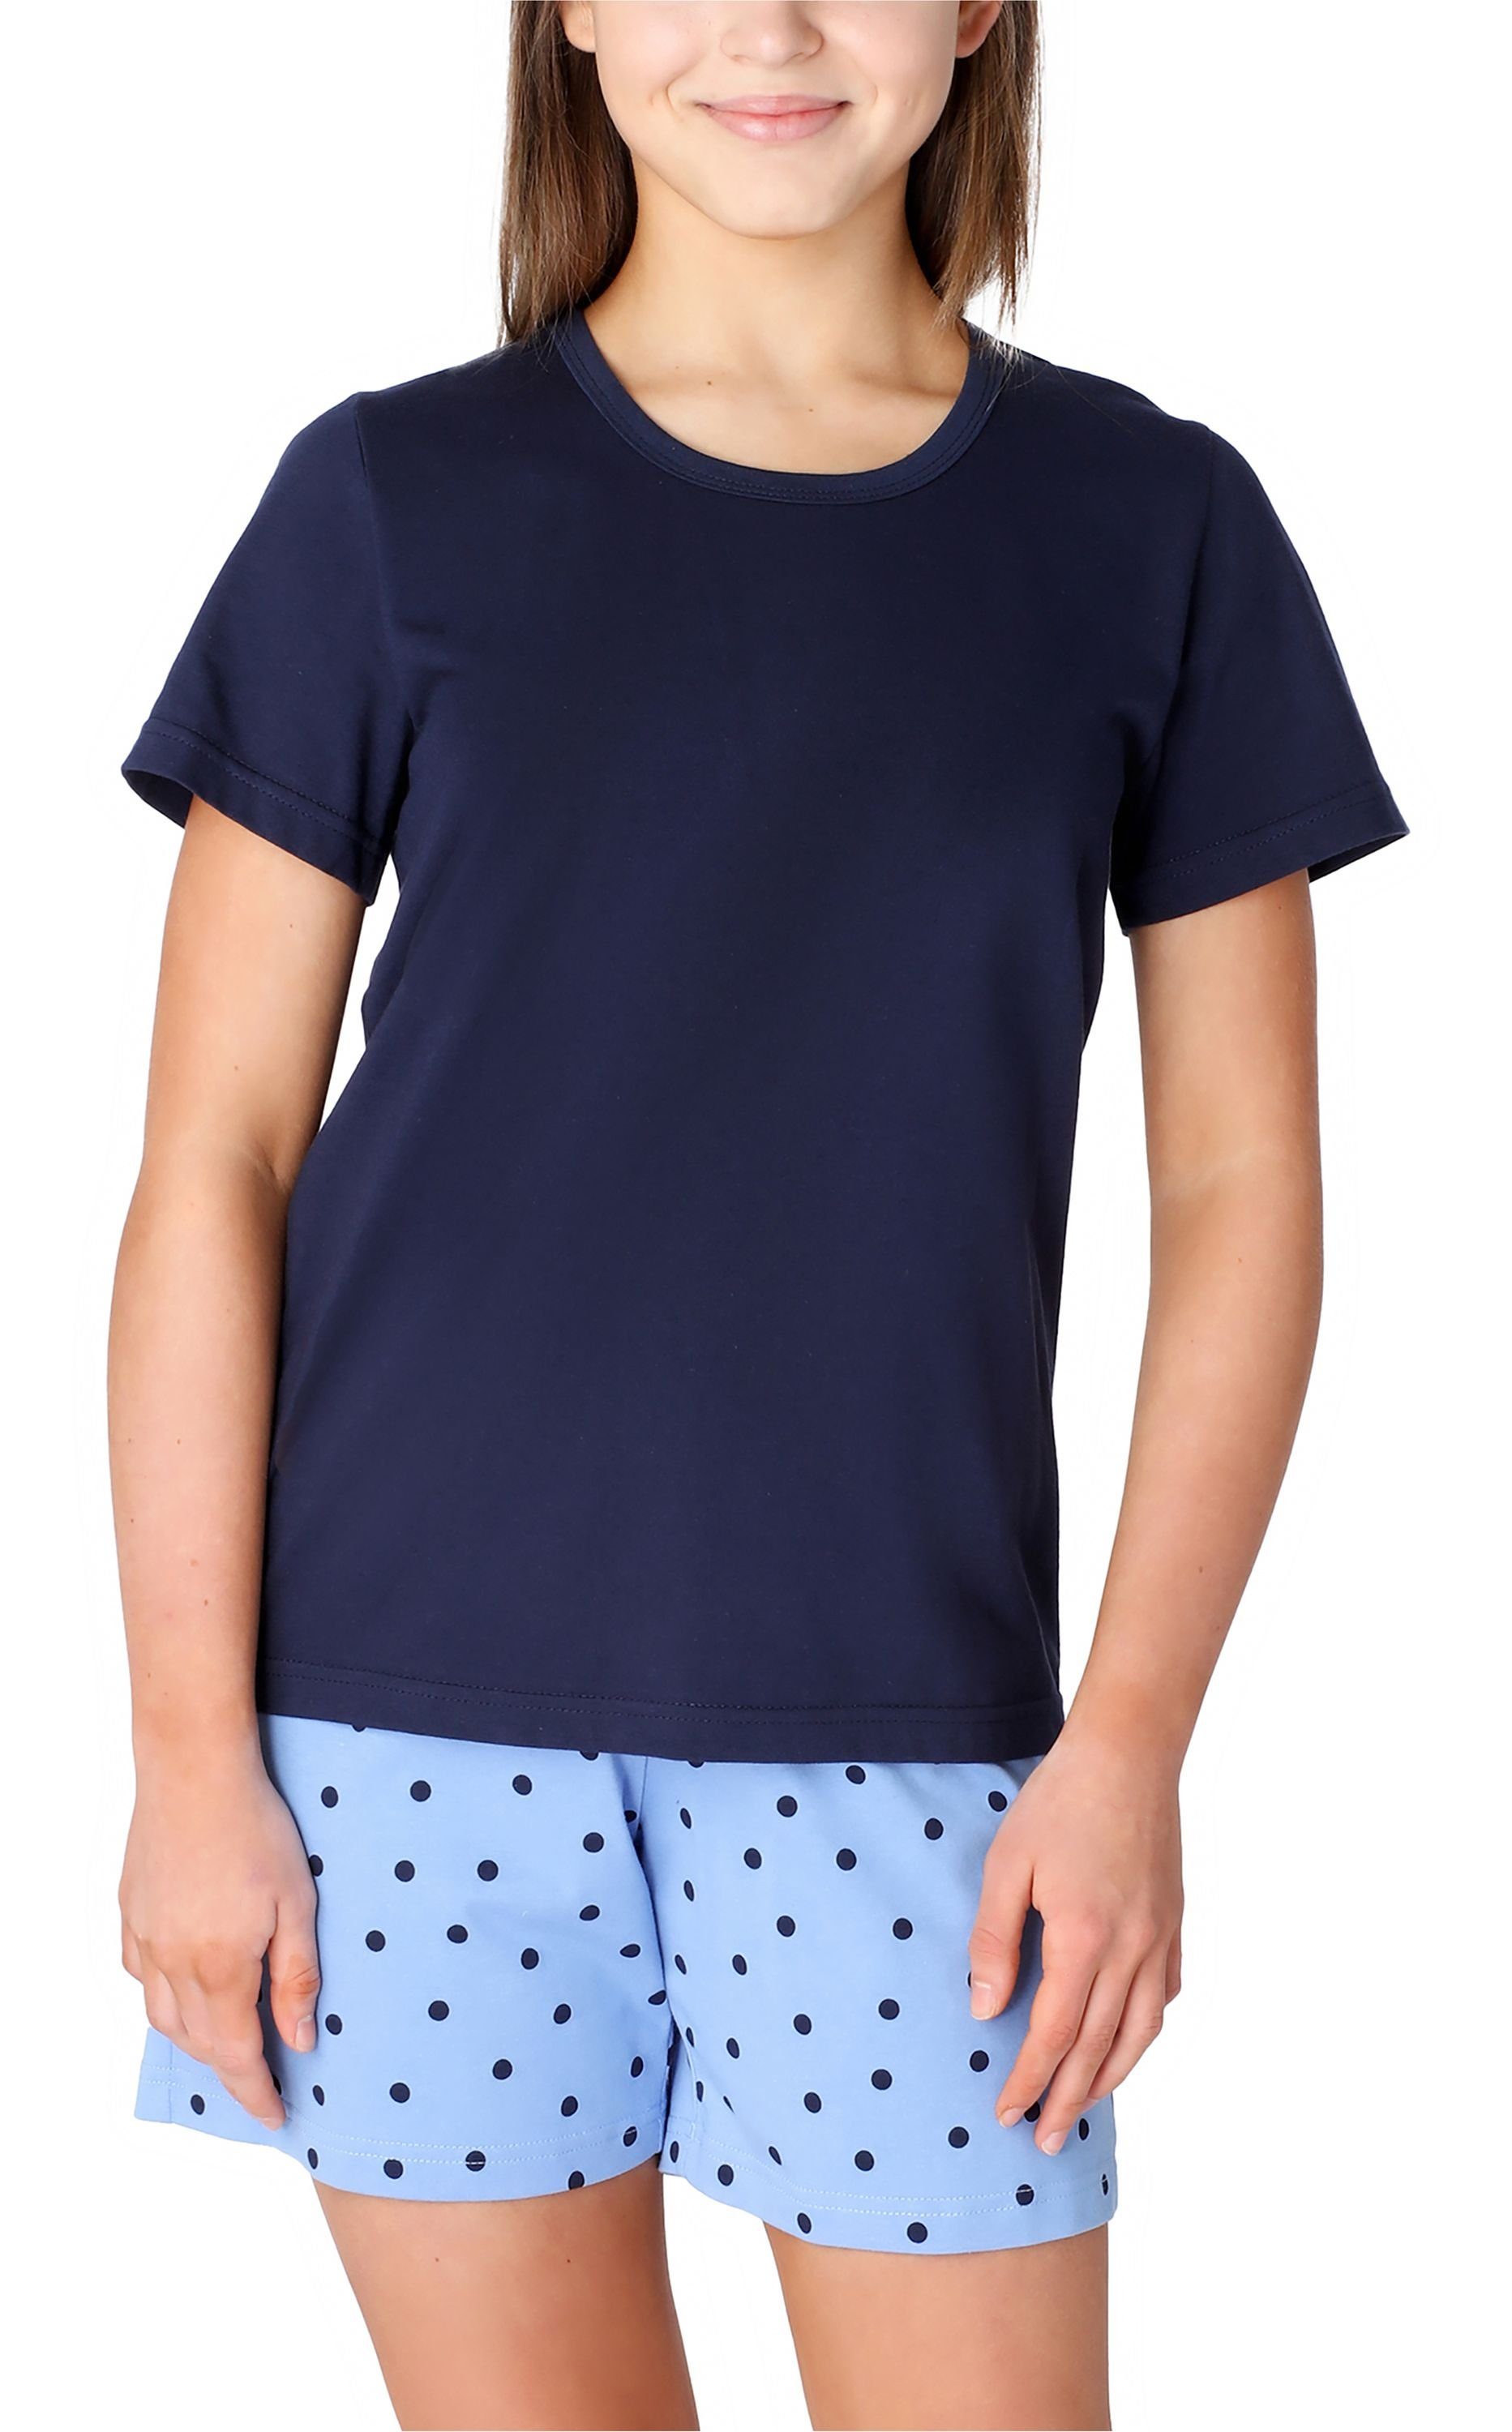 Merry Style Schlafanzug Mädchen Schlafanzüge Baumwolle Marine/Blau/Punkte Pyjama Set aus MS10-265 Kurz